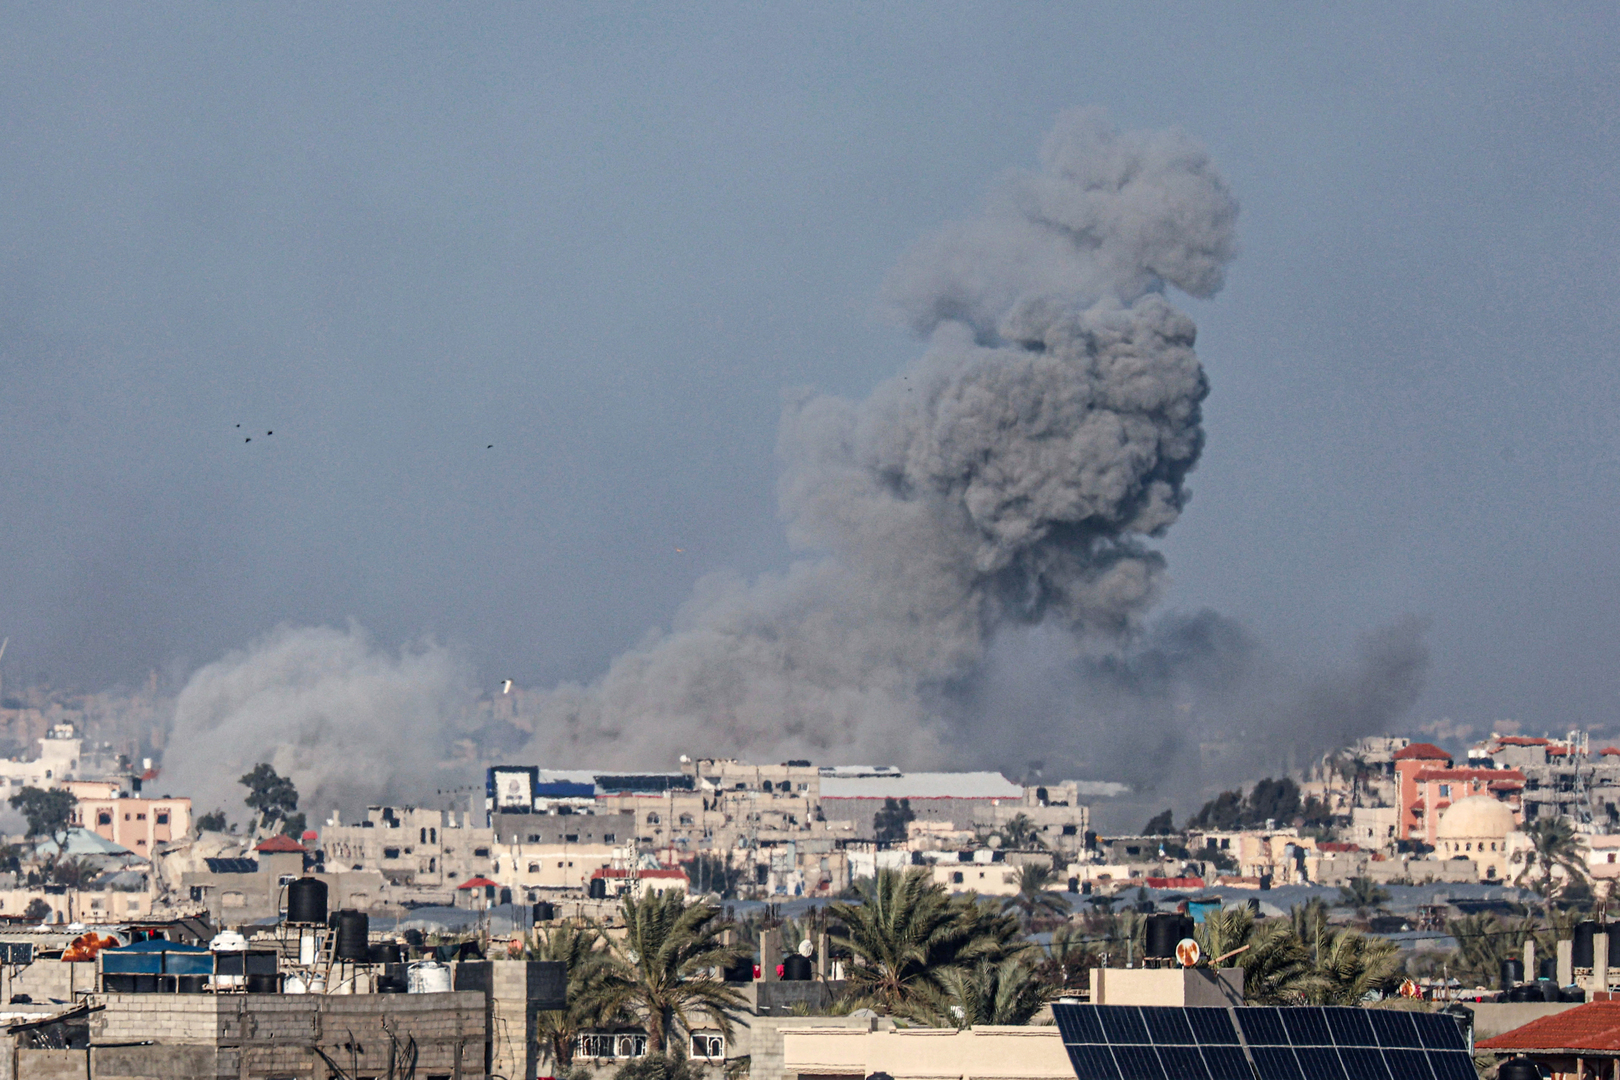 جنود إسرائيليون يلعبون كرة القدم على وقع تفجير مبان في غزة (فيديو)